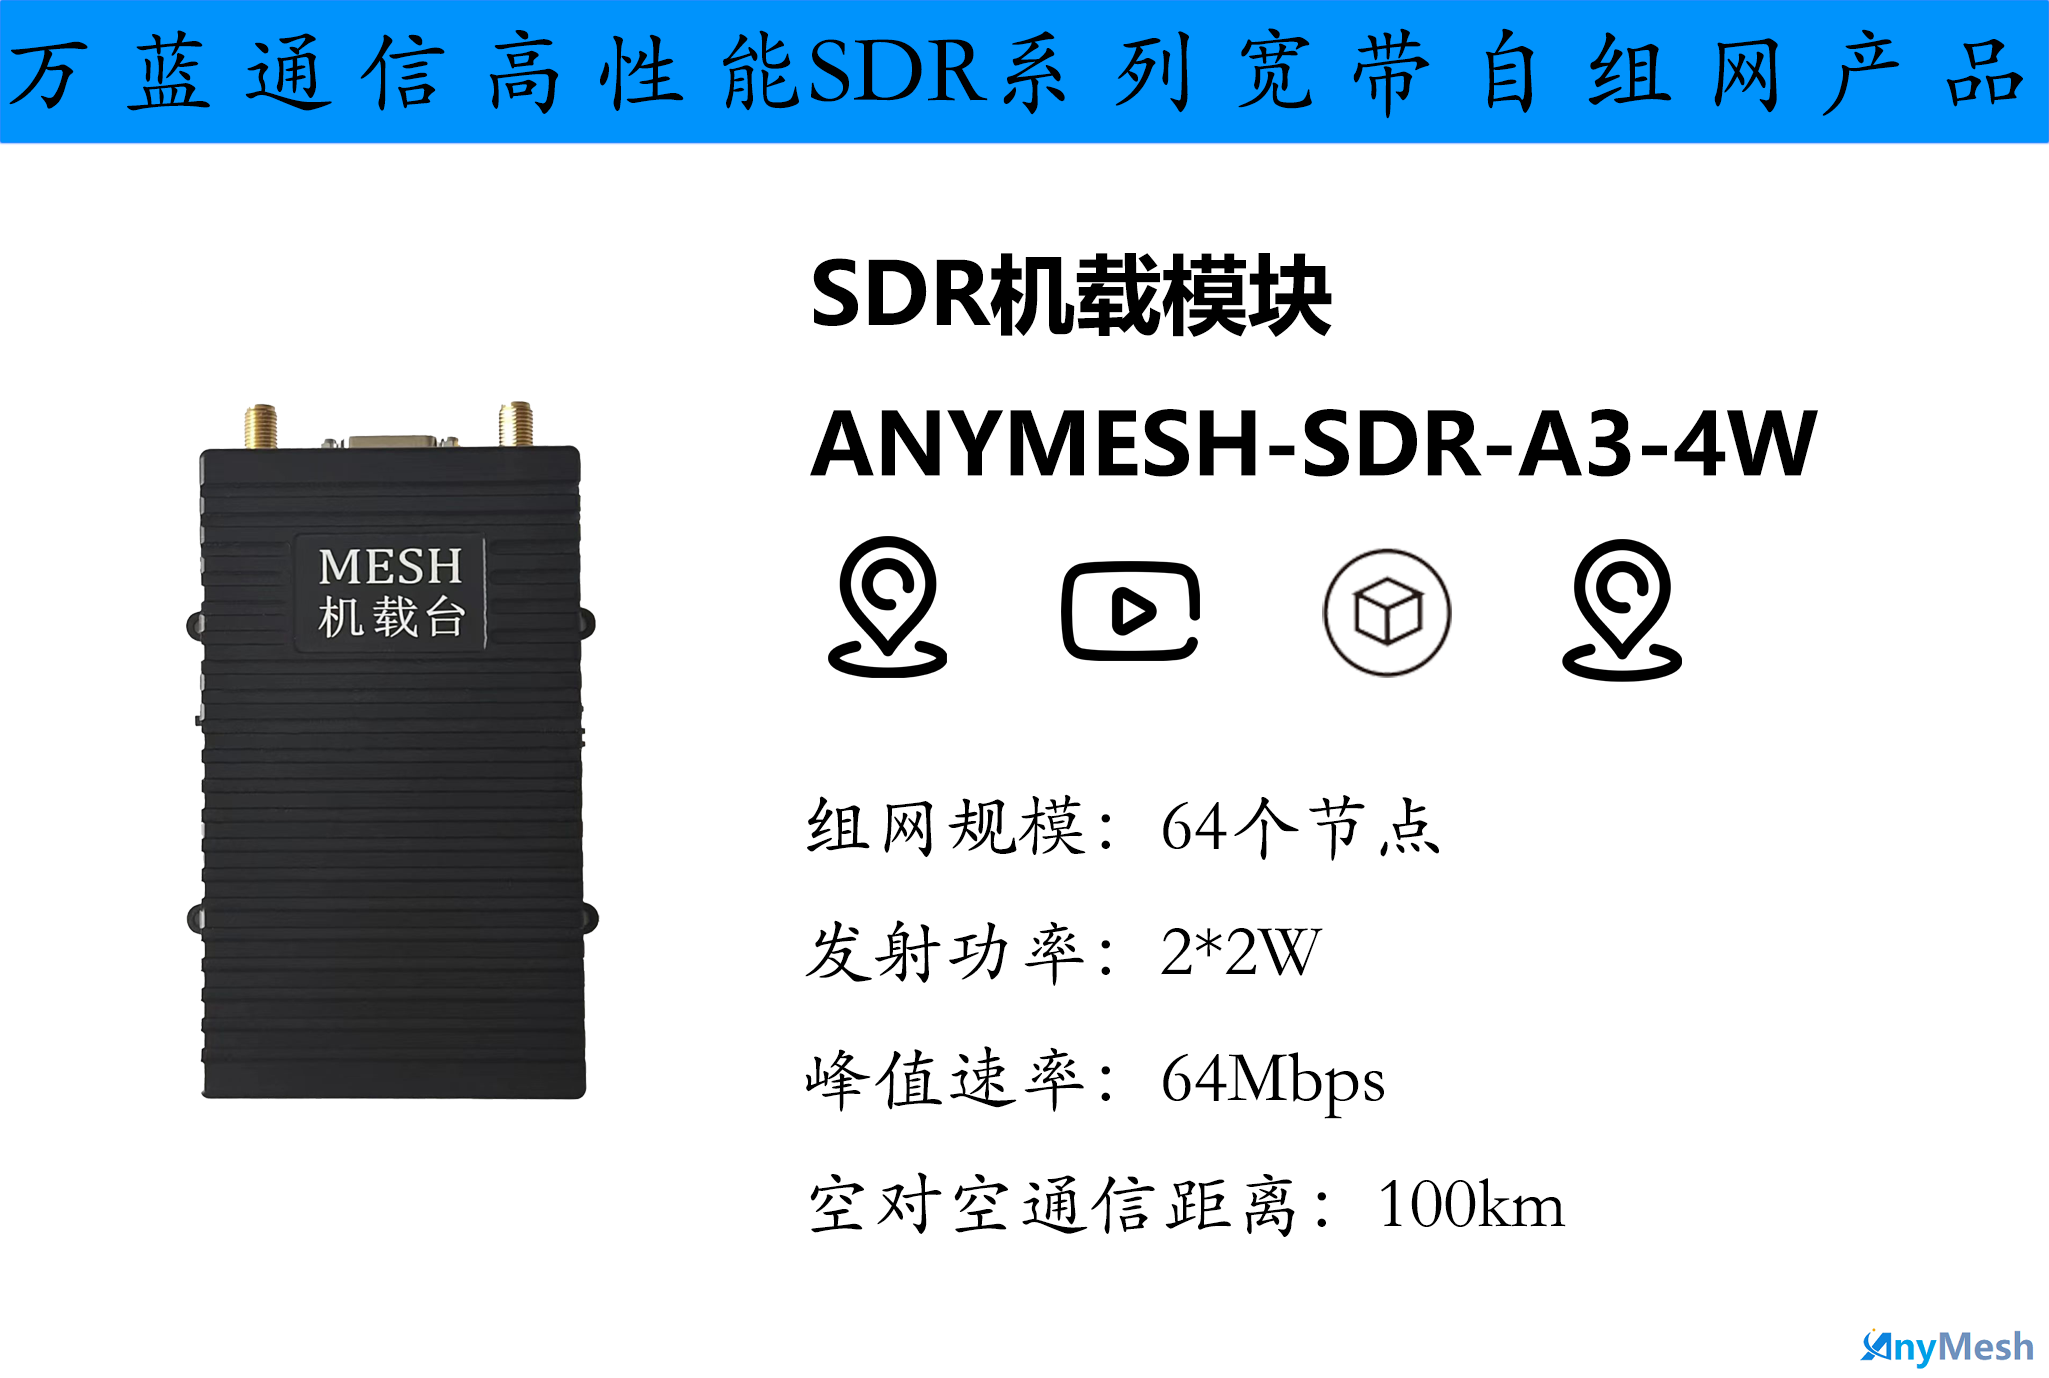 AnyMESH-SDR-A3-4W机载型航空自组网电台 机载MESH电台